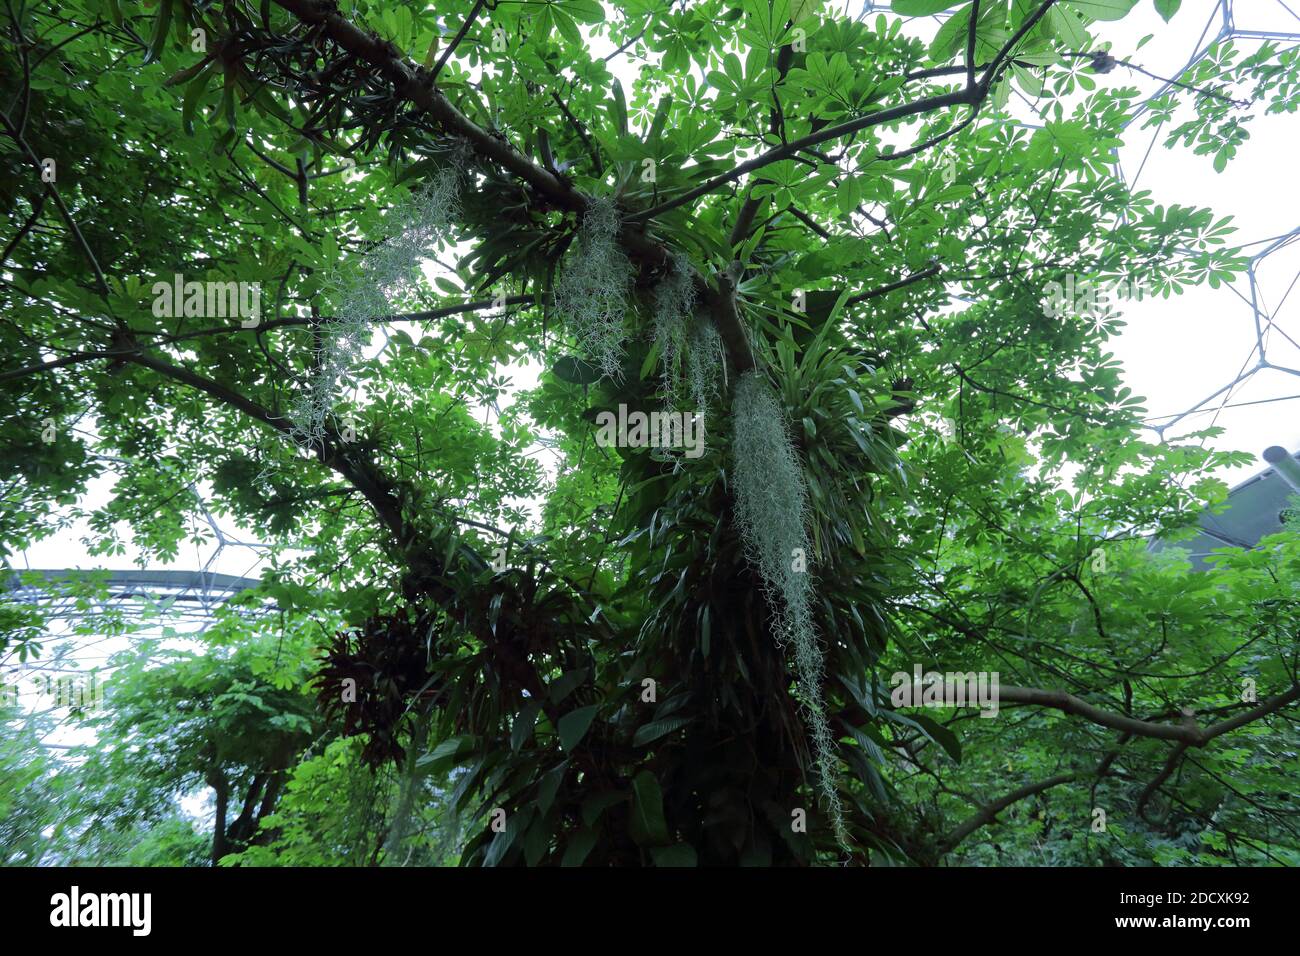 Eden Project è situato in Cornovaglia, Inghilterra. Si tratta di una vista del bioma tropicale. Foto Stock